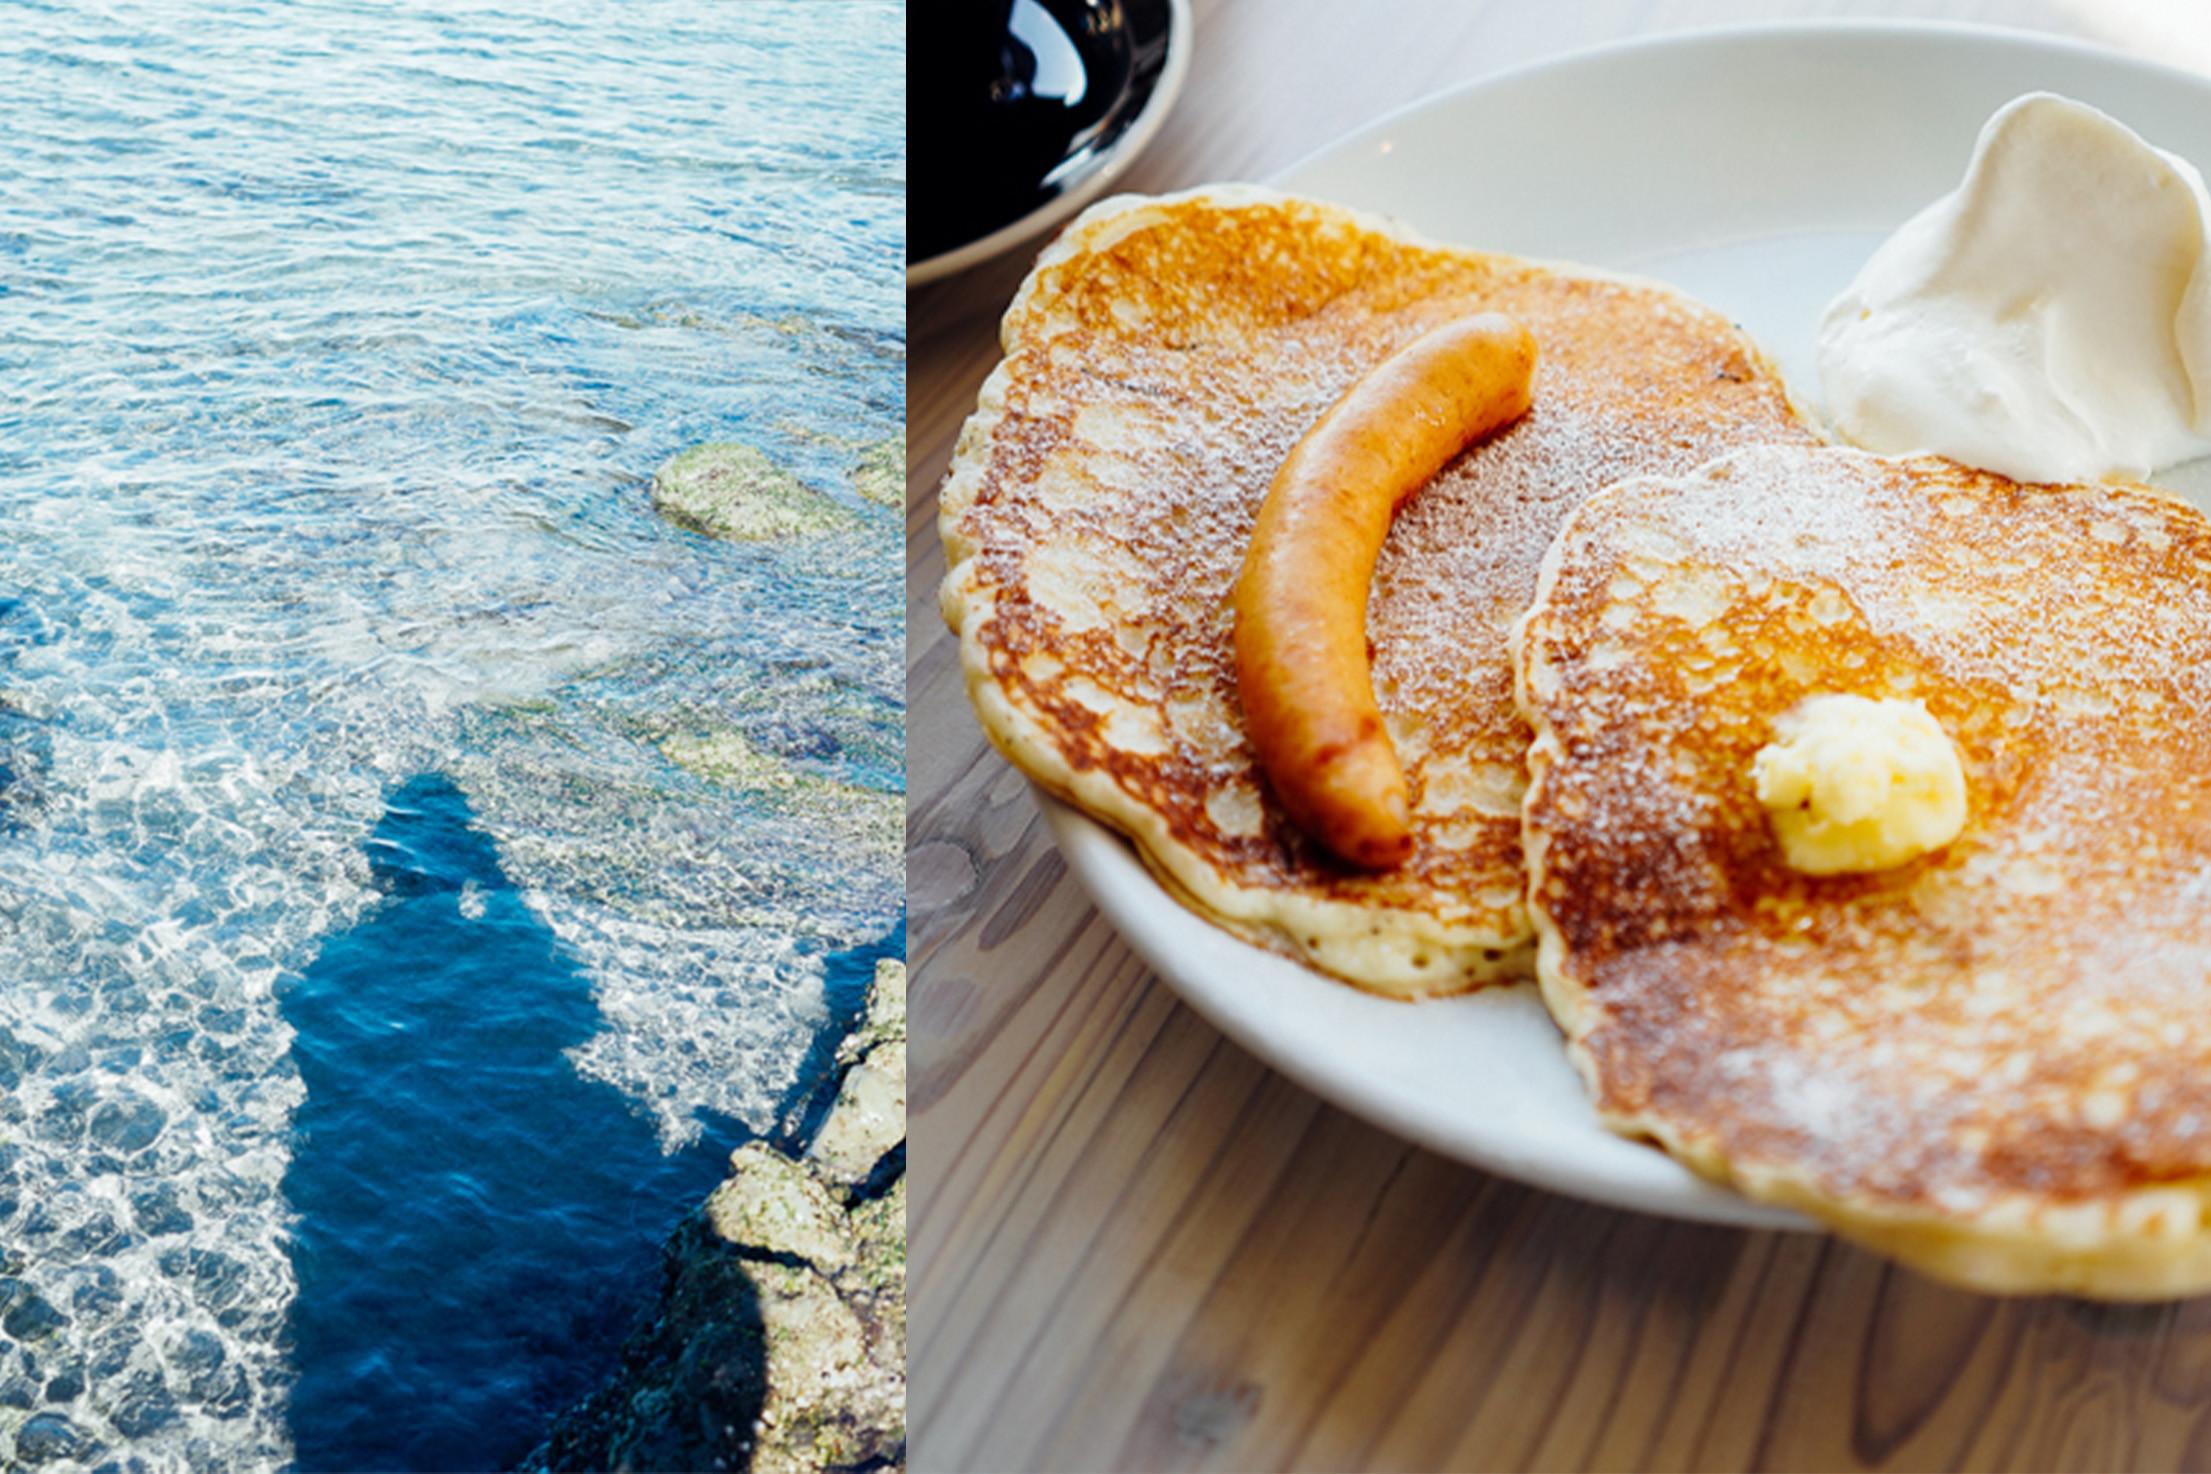 葉山の海とsundayパンケーキモーニング 1枚から始まる 旅と私のタカラモノ Blog Madame Figaro Jp フィガロジャポン